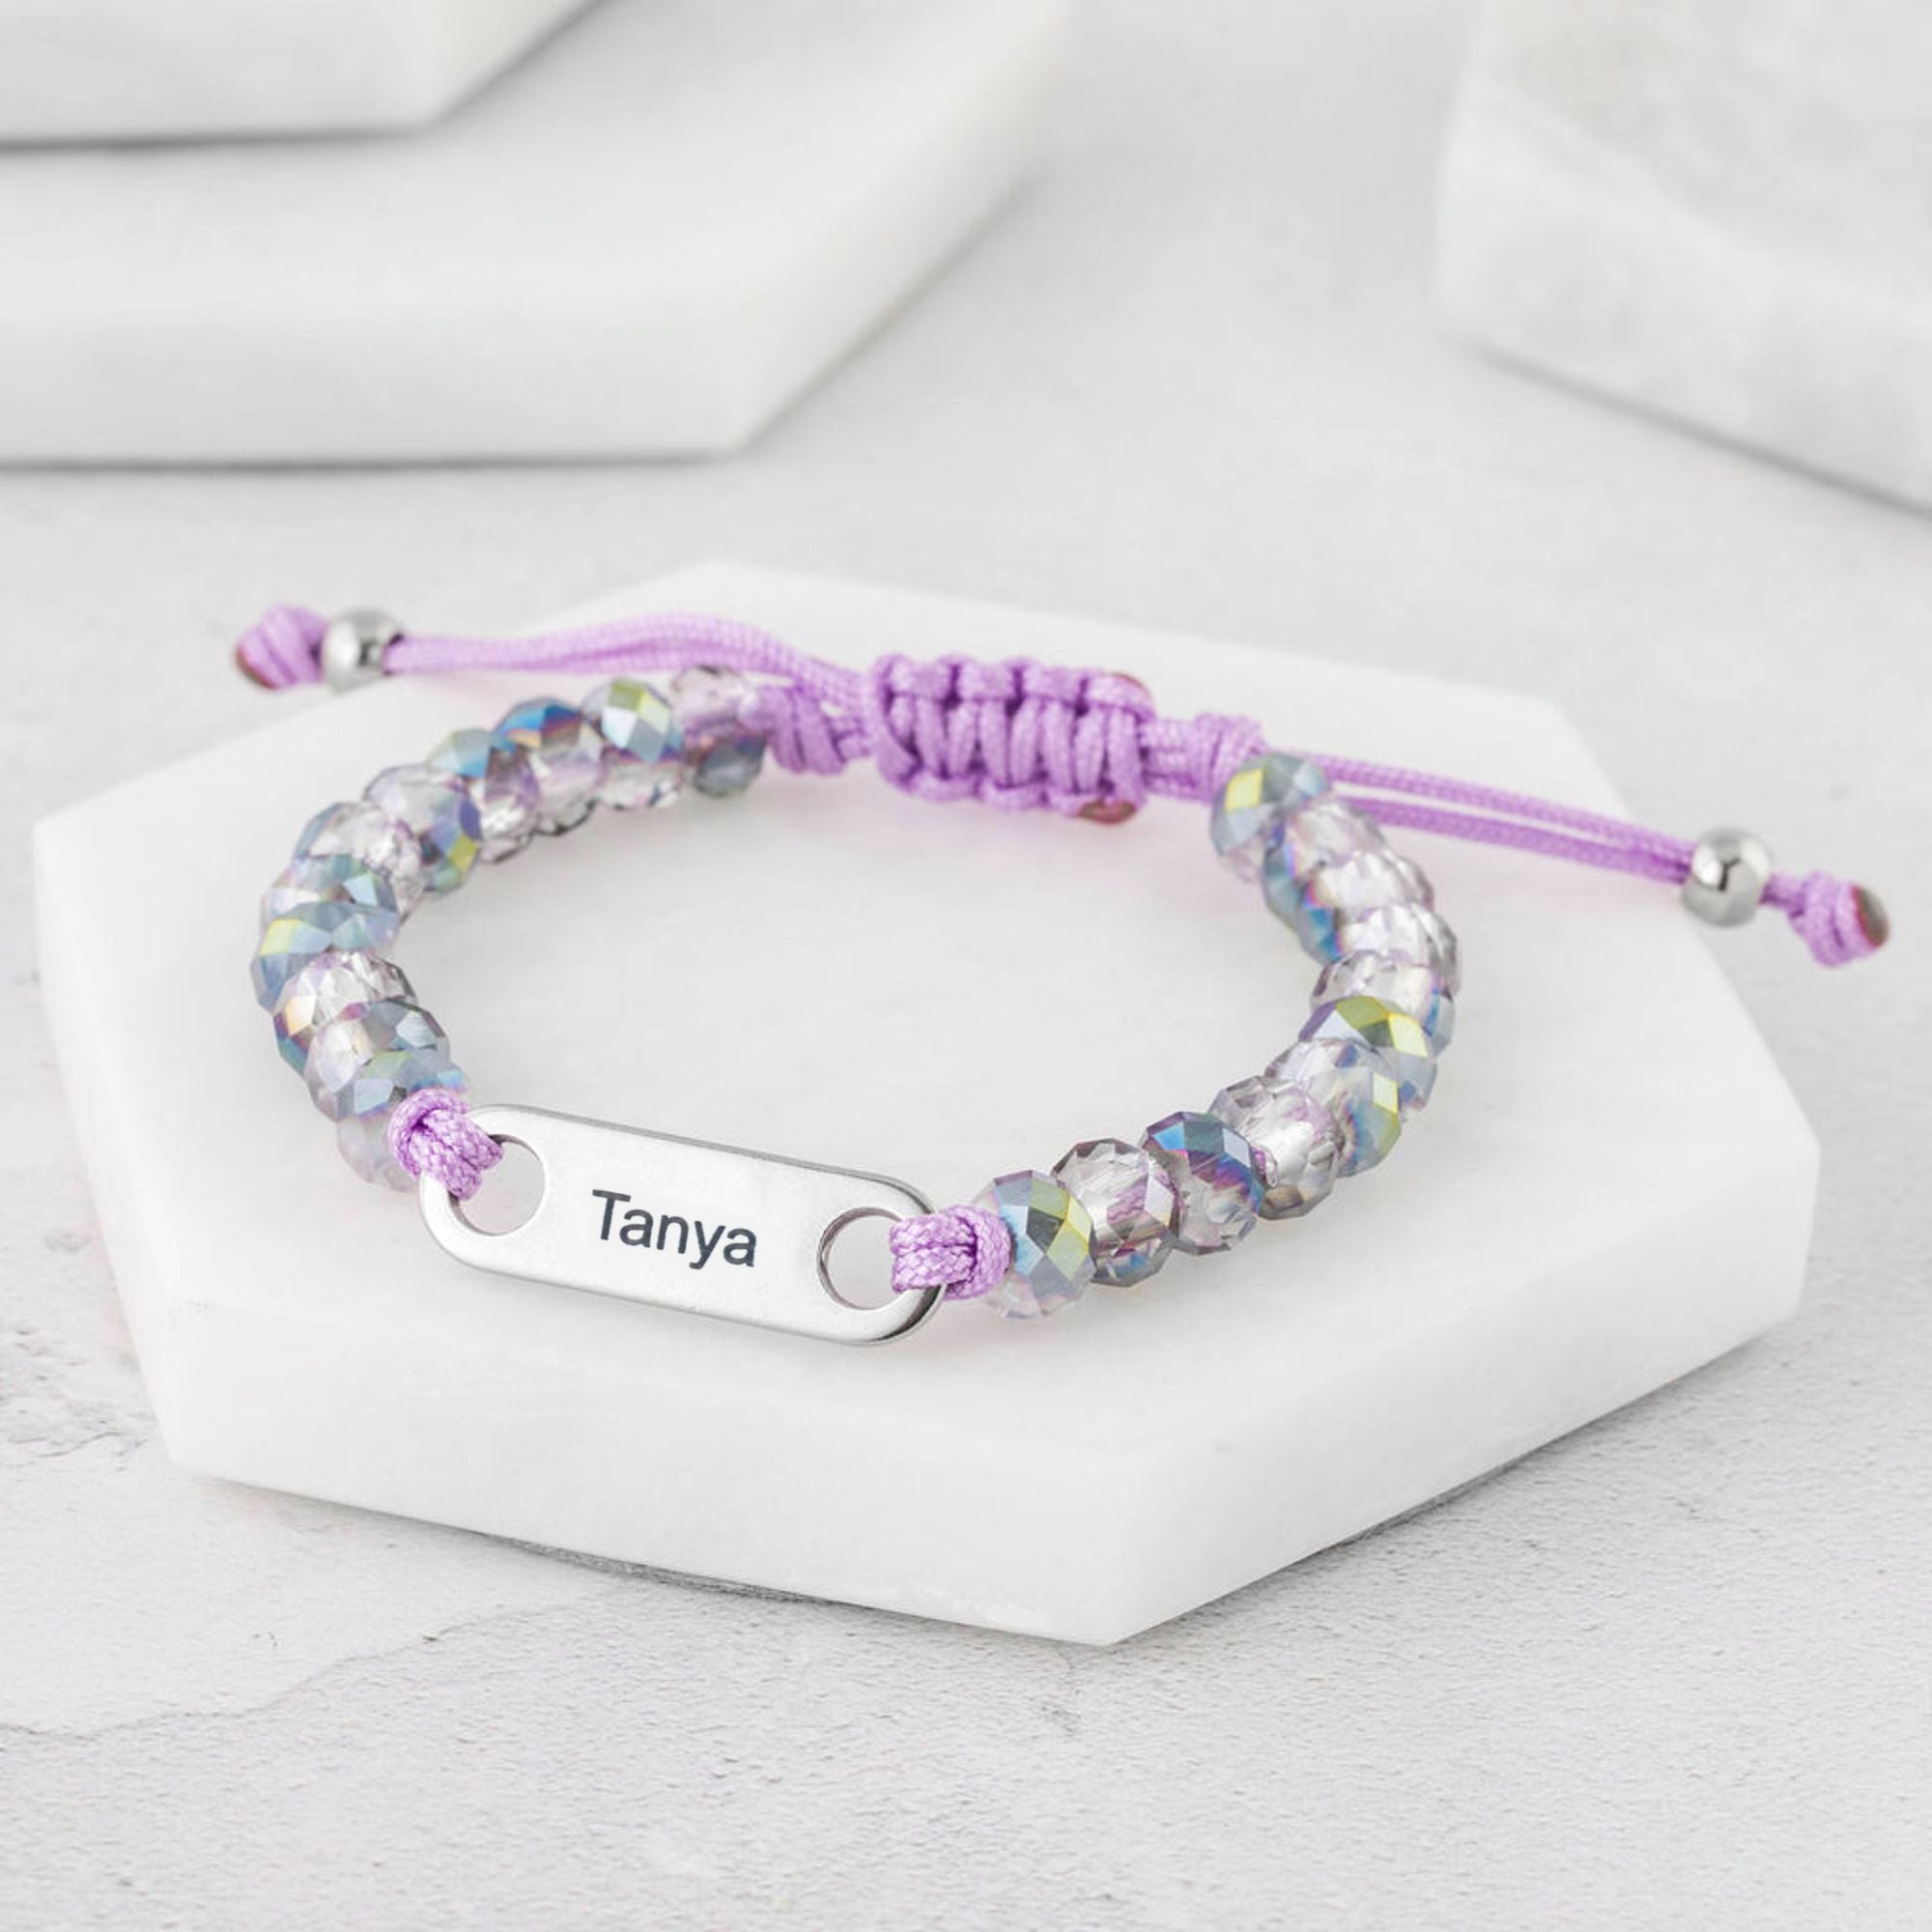 personalised bracelet for girls customised gift